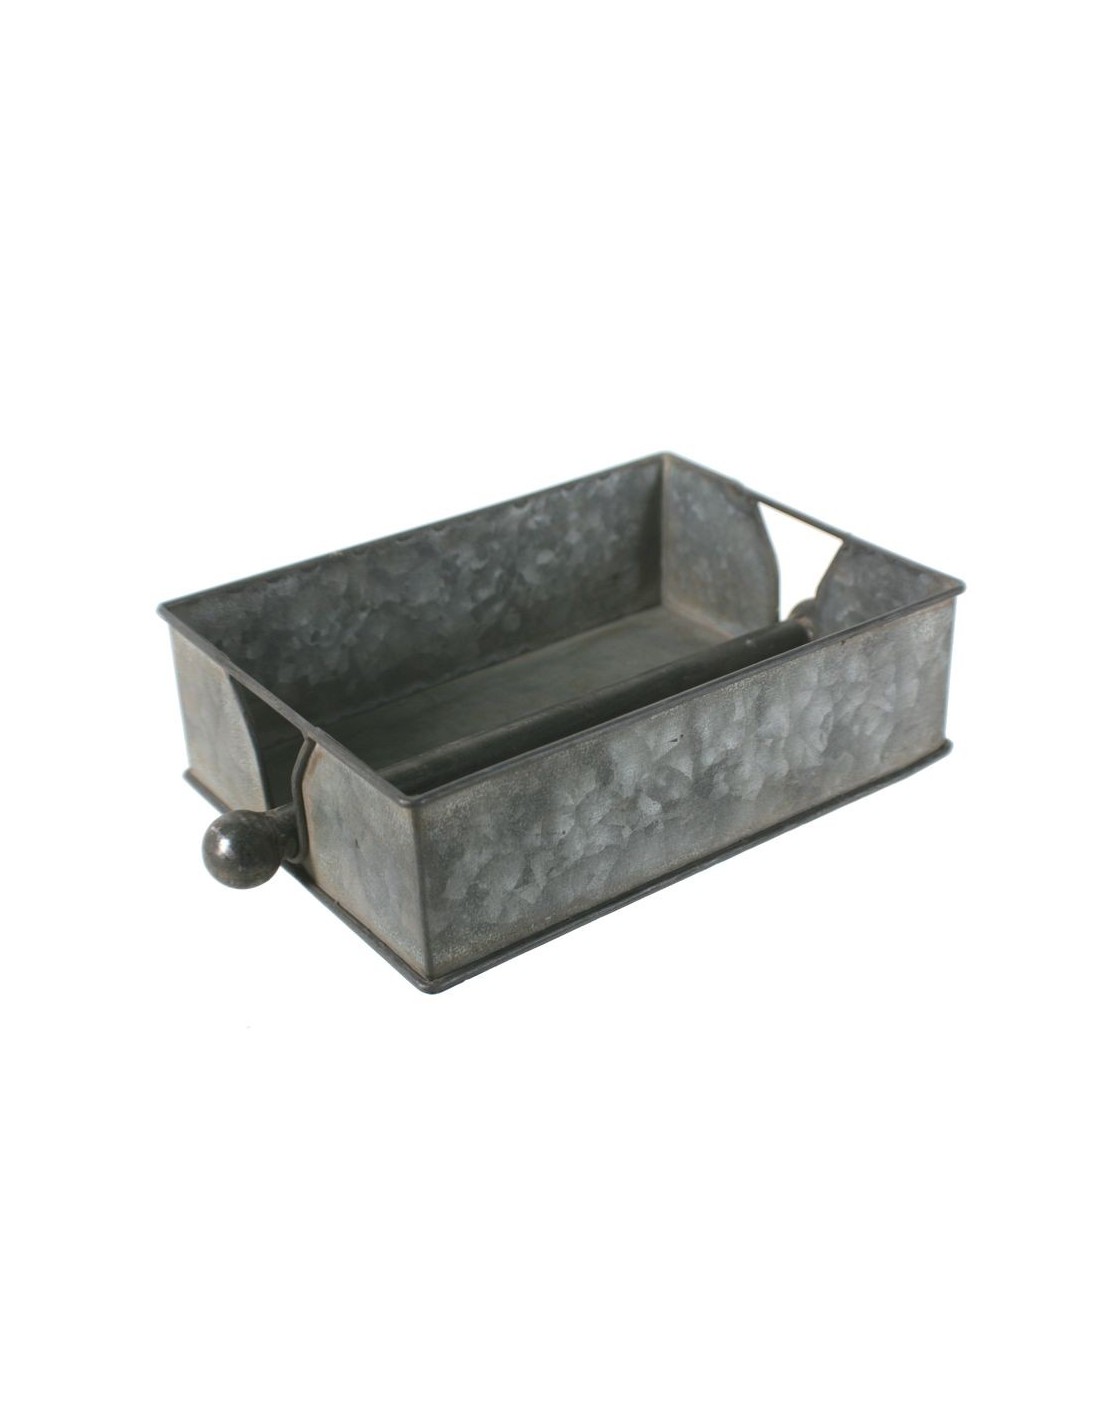 Dispensador de toallitas klennex metálico rectangular color estaño con barra prensora central ideal regalo para decoración baño